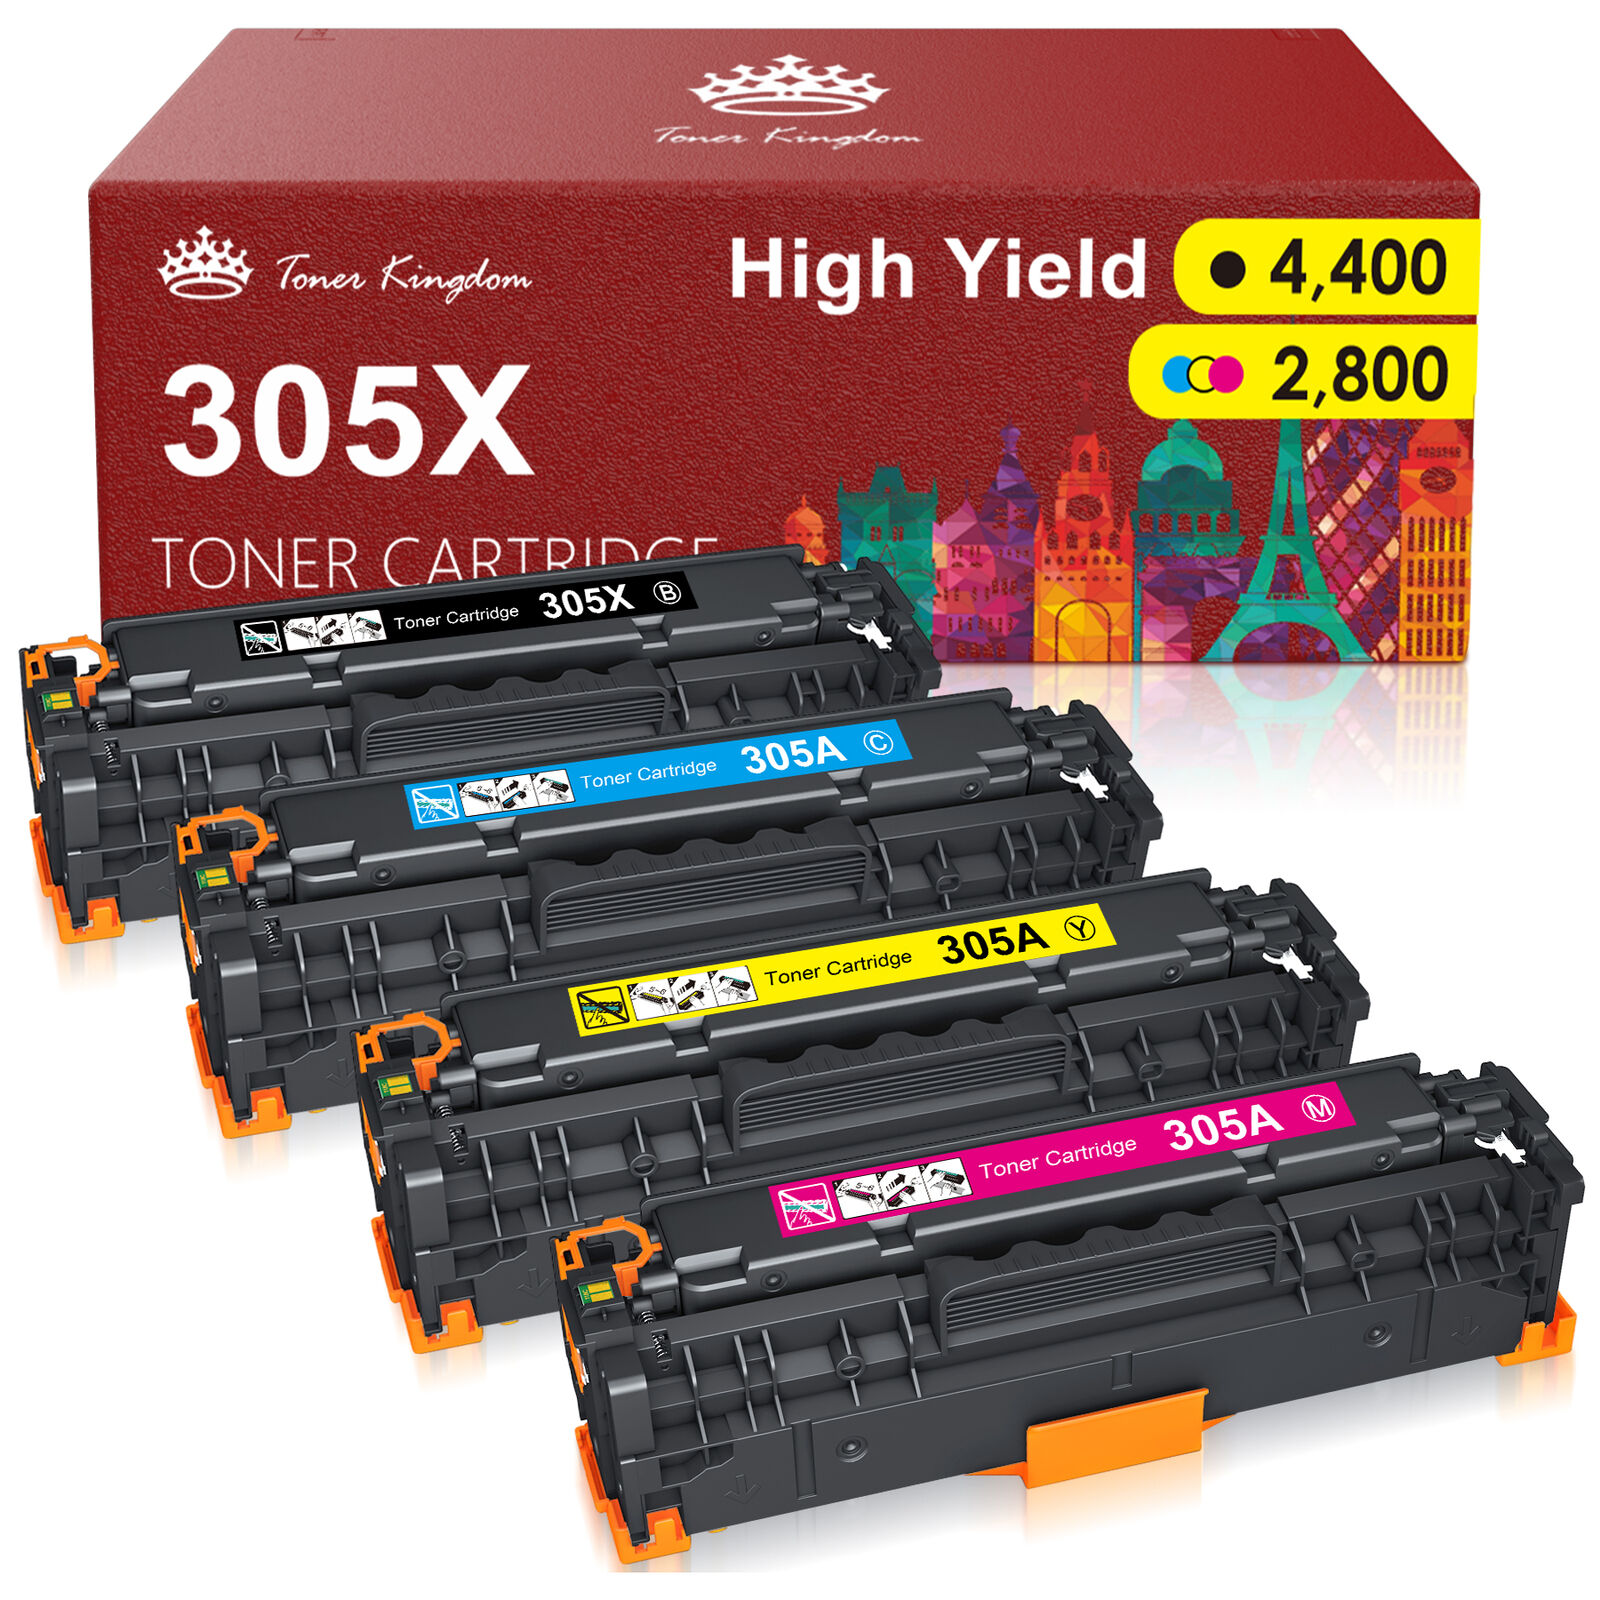 4P CE410X-CE413A 305X Color Toner For HP LaserJet Pro M475dn M475dw M451nw M351a